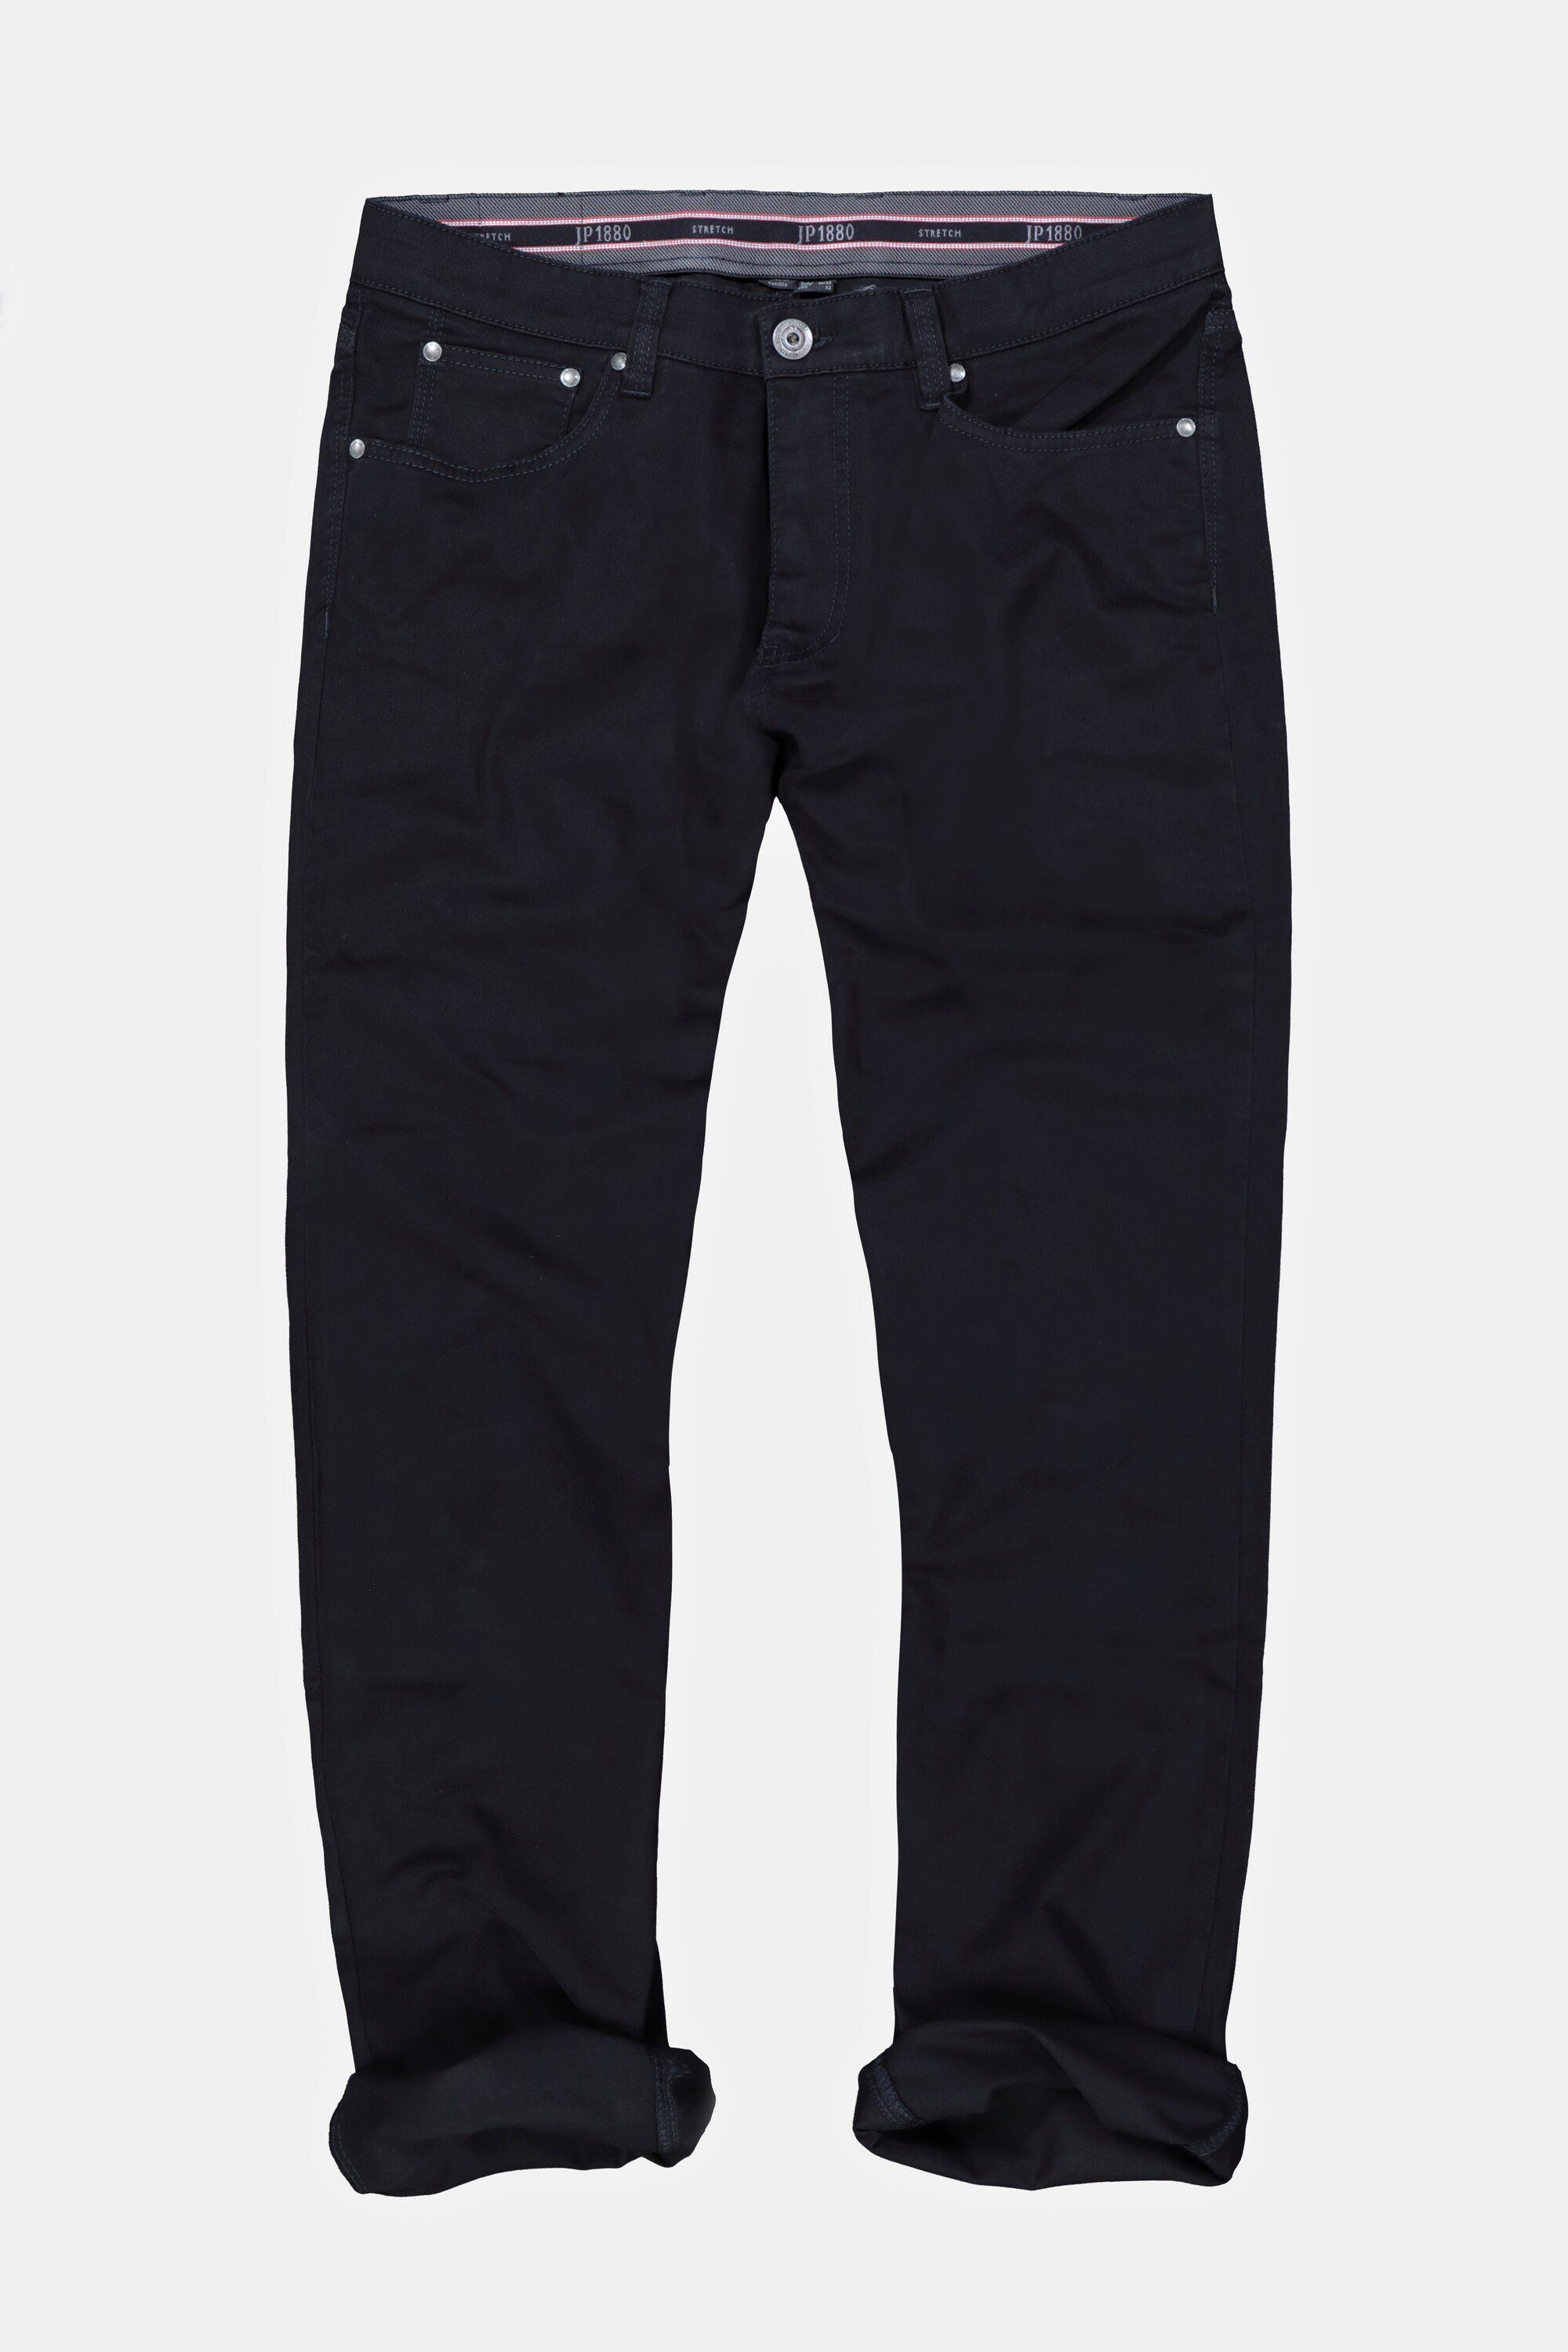 JP1880 5-Pocket-Jeans Superblack-Färbung Twillhose Komfortbund